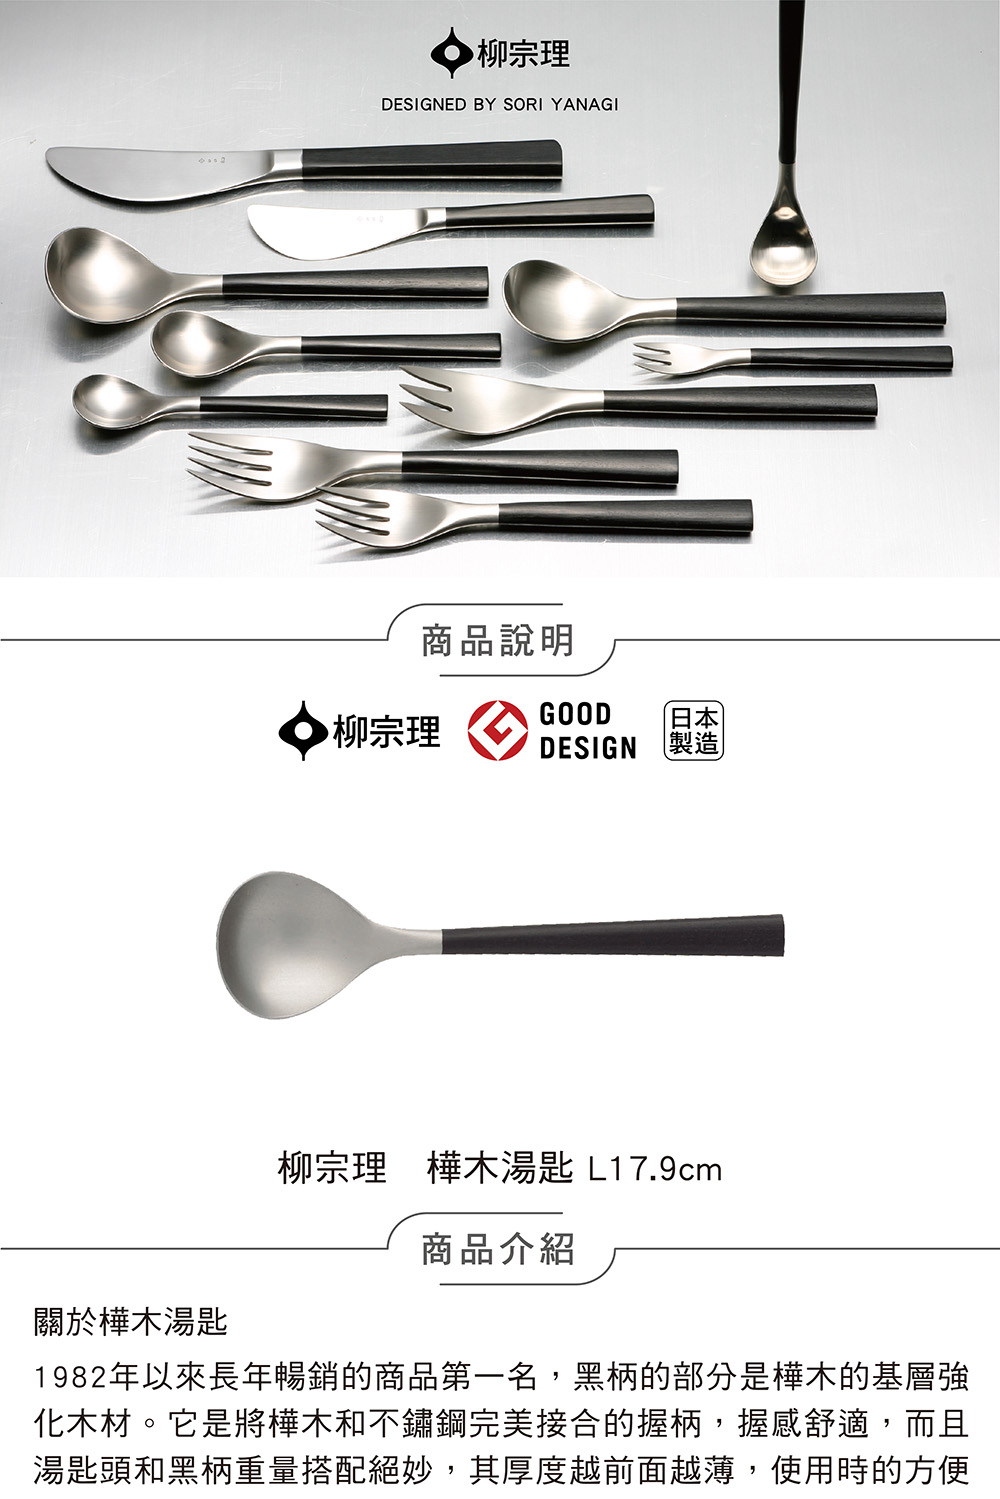 柳宗理 日本製樺木湯匙(18-8高品質不鏽鋼及樺木打造的質感